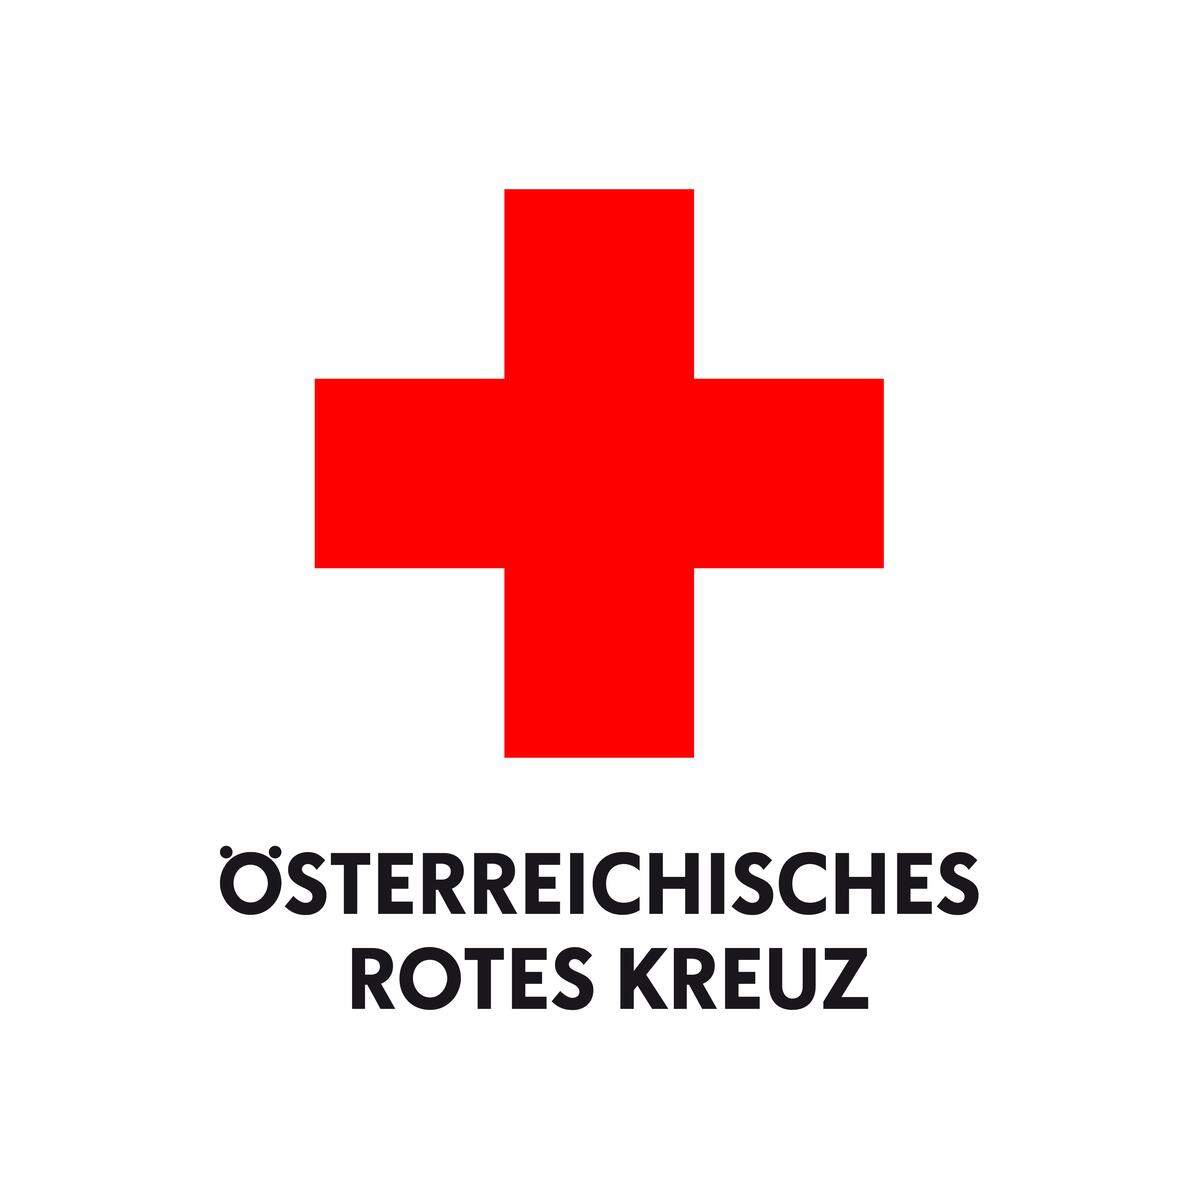 Platz 9 hält – Überraschung – das Österreichische Rote Kreuz.